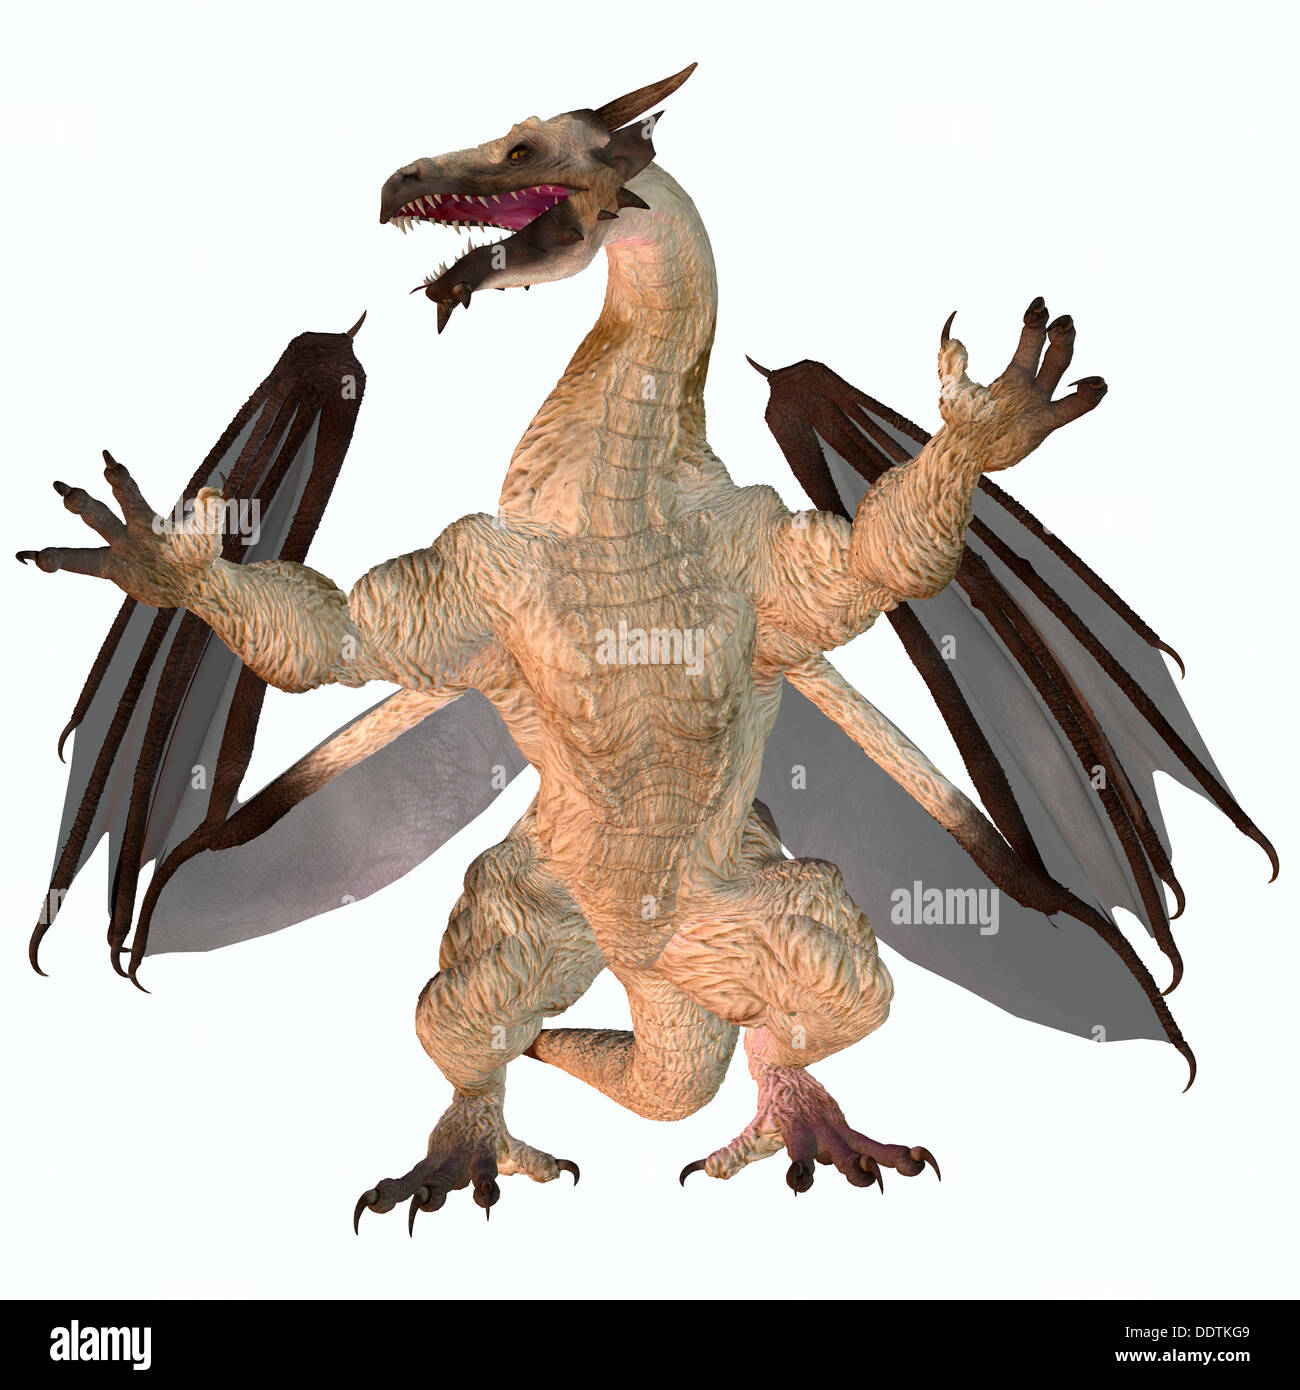 Una criatura de la mitología y fantasía el dragón es un feroz monstruo volador con cuernos y dientes grandes. Foto de stock